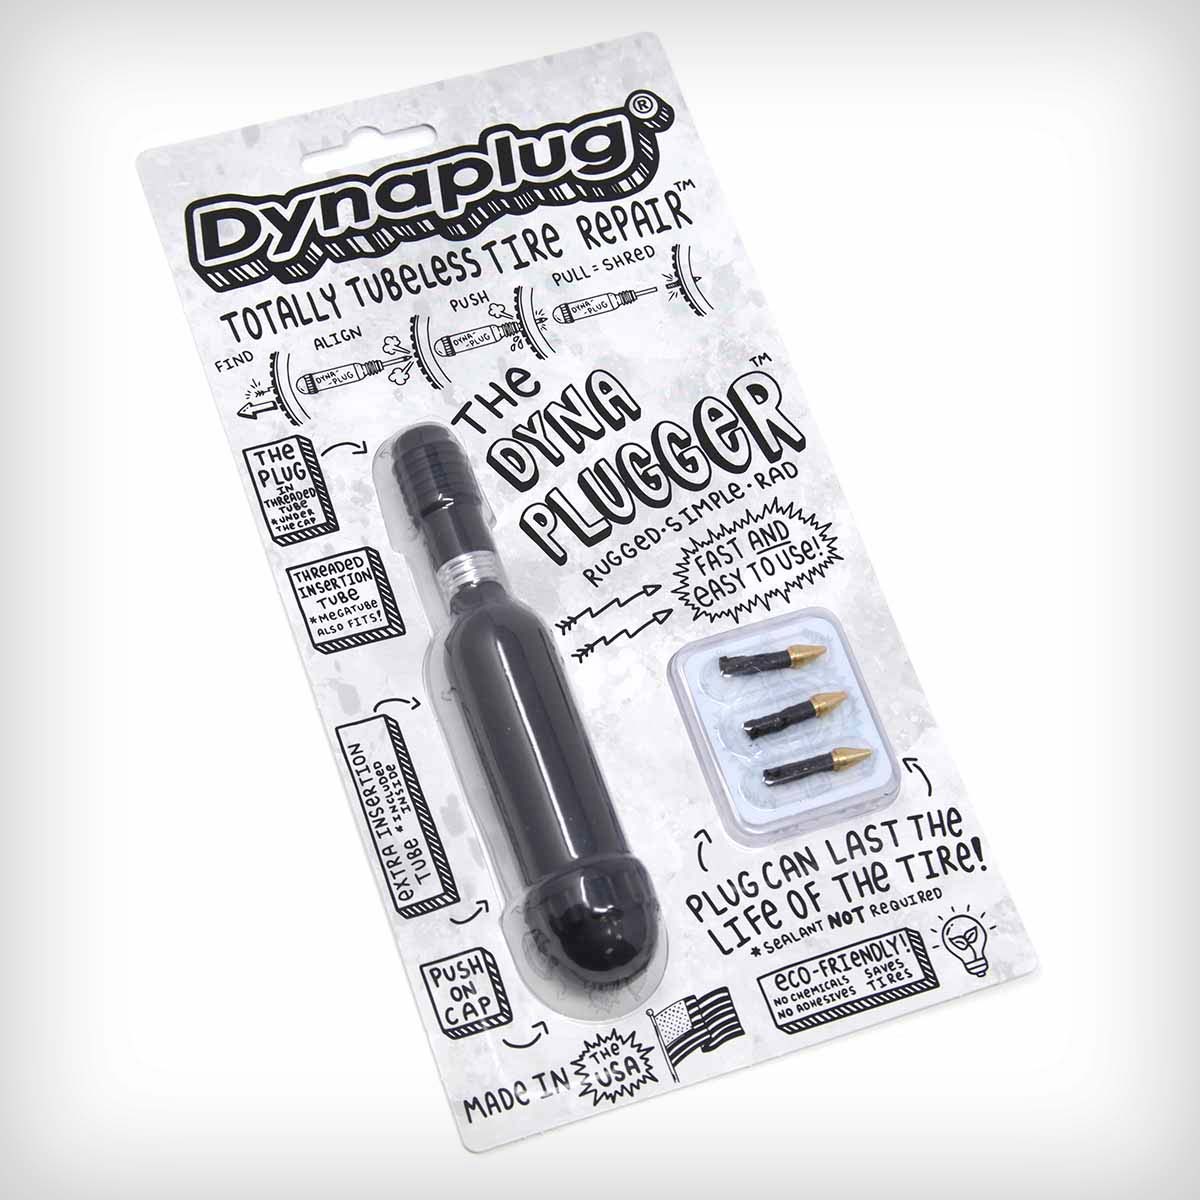 Dynaplug presenta el Dynaplugger, su herramienta de reparación Tubeless más económica